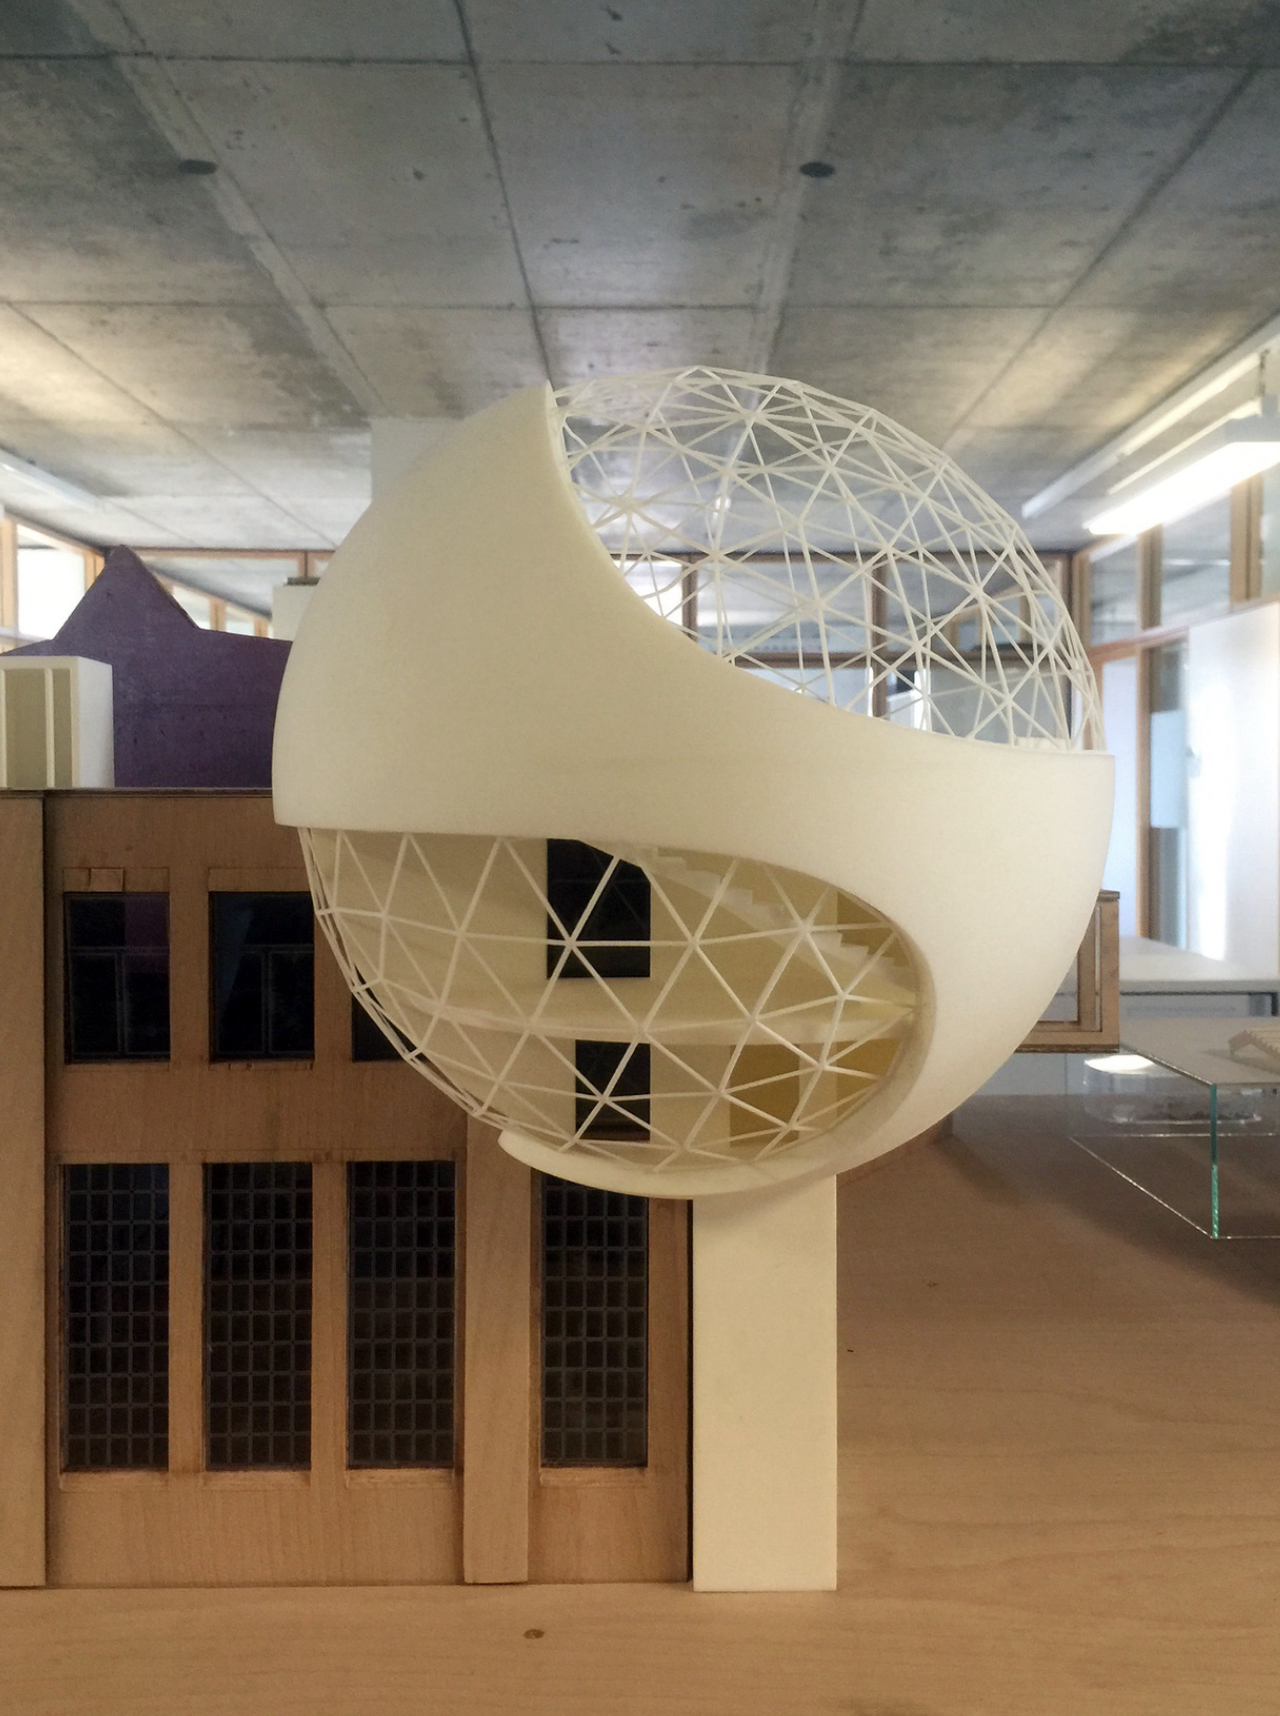 Projeto é uma esfera de vidro e concreto e será um anexo de uma fábrica na Alemanha.<br>Foto: Kirow / Divulgação